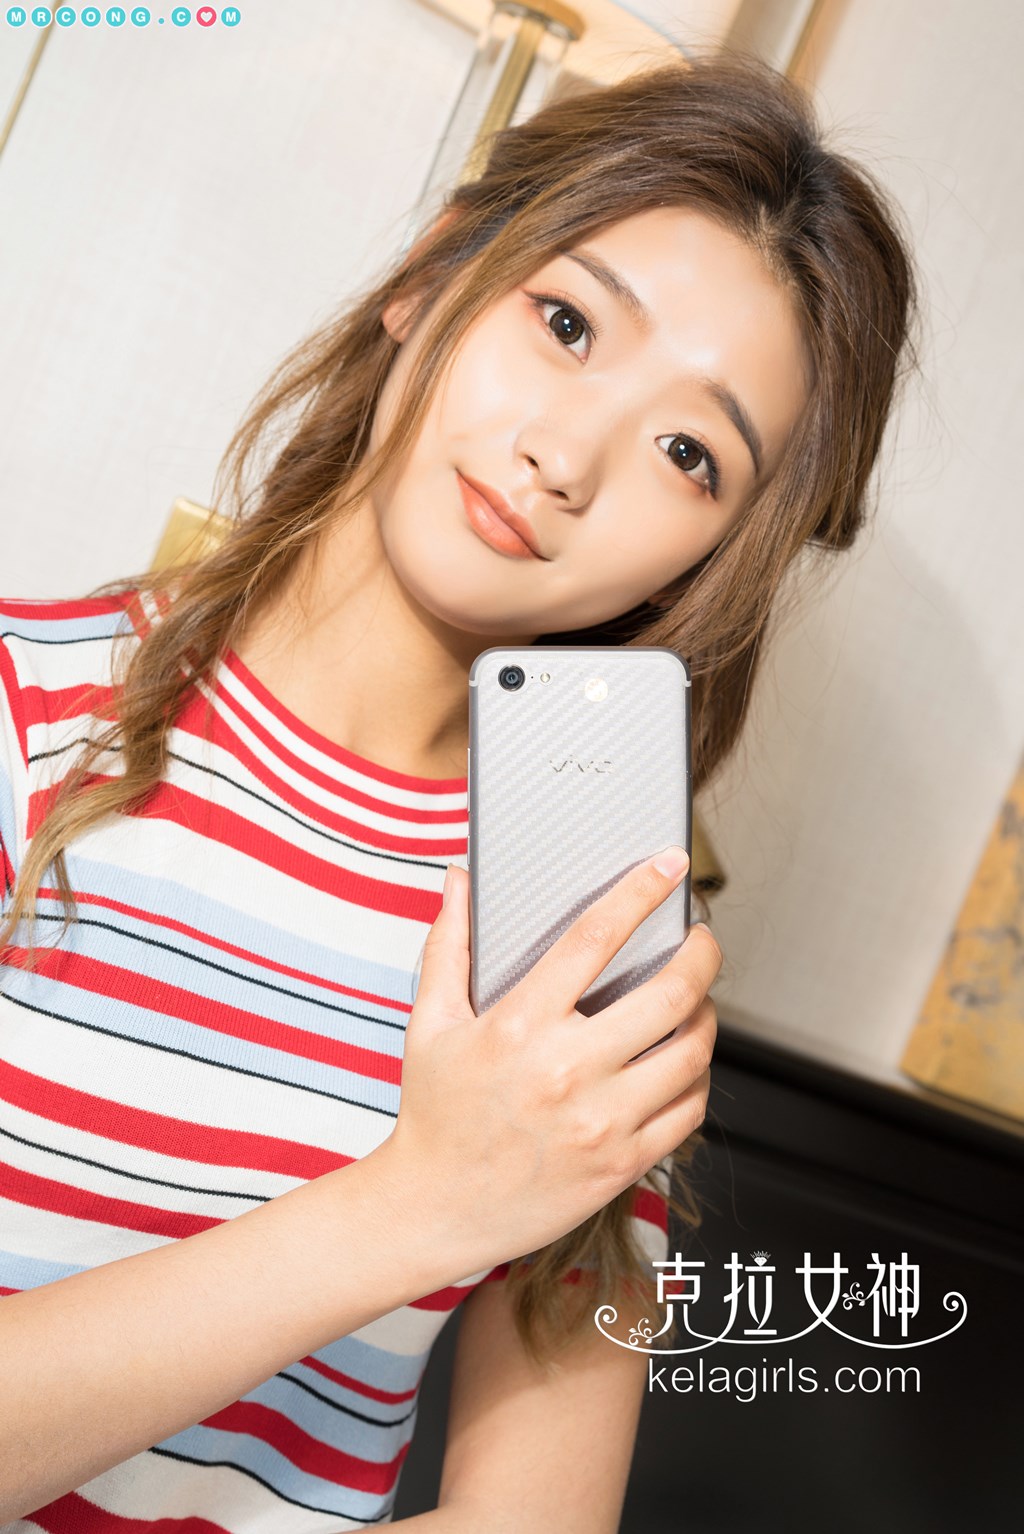 KelaGirls 2018-02-18: Model Yao Yao (瑶瑶) (23 photos)